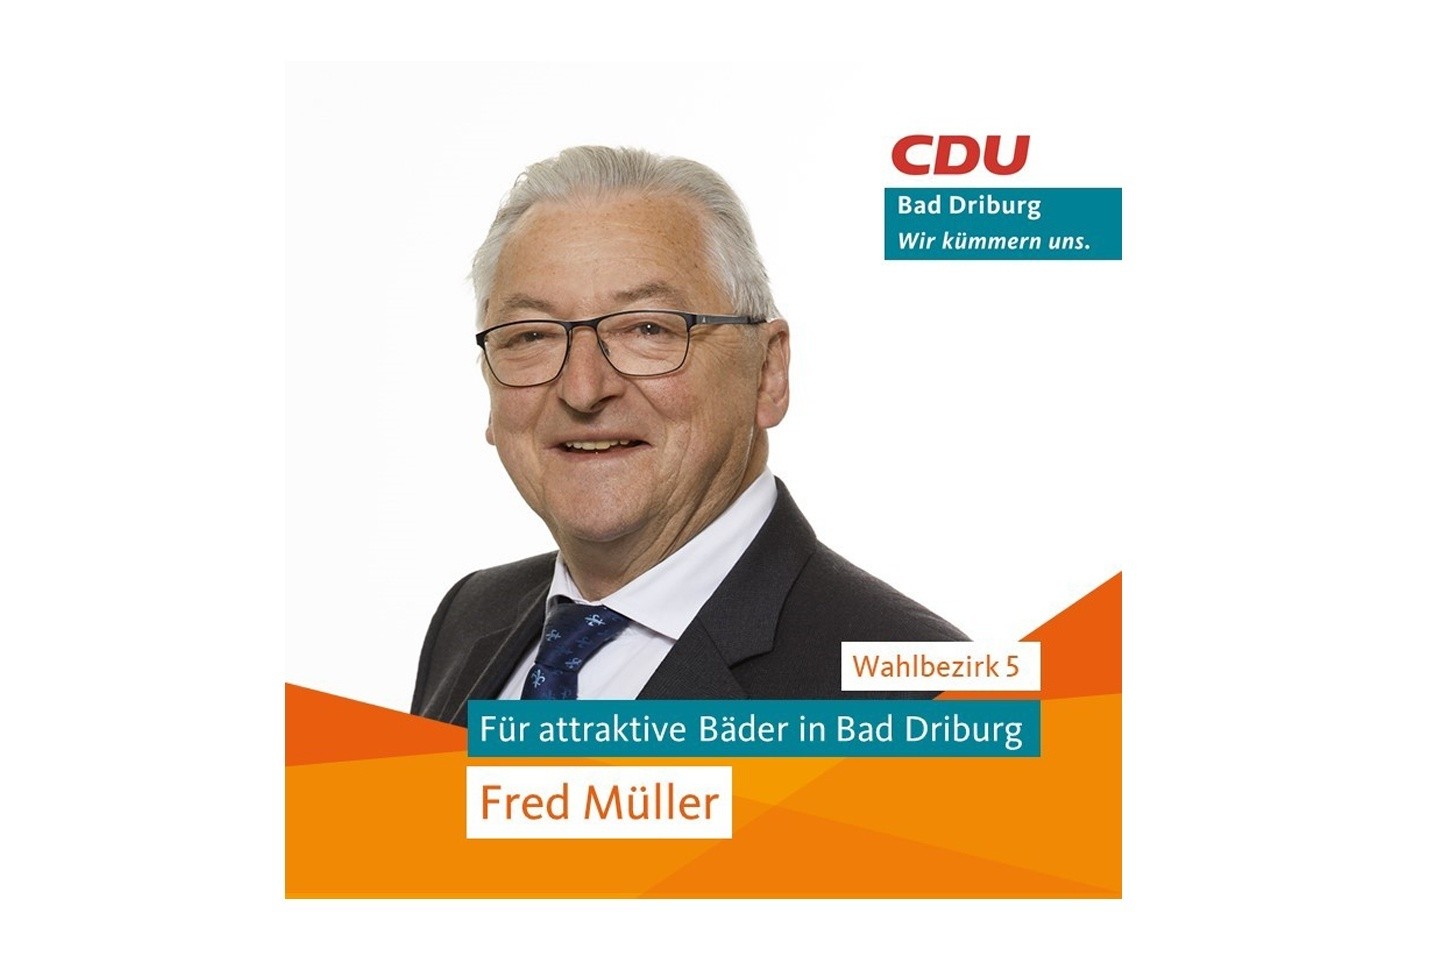 Kandidatenvorstellung zur Kommunalwahl 2020 - Fred Müller – CDU-Kandidat im Wahlbezirk 5